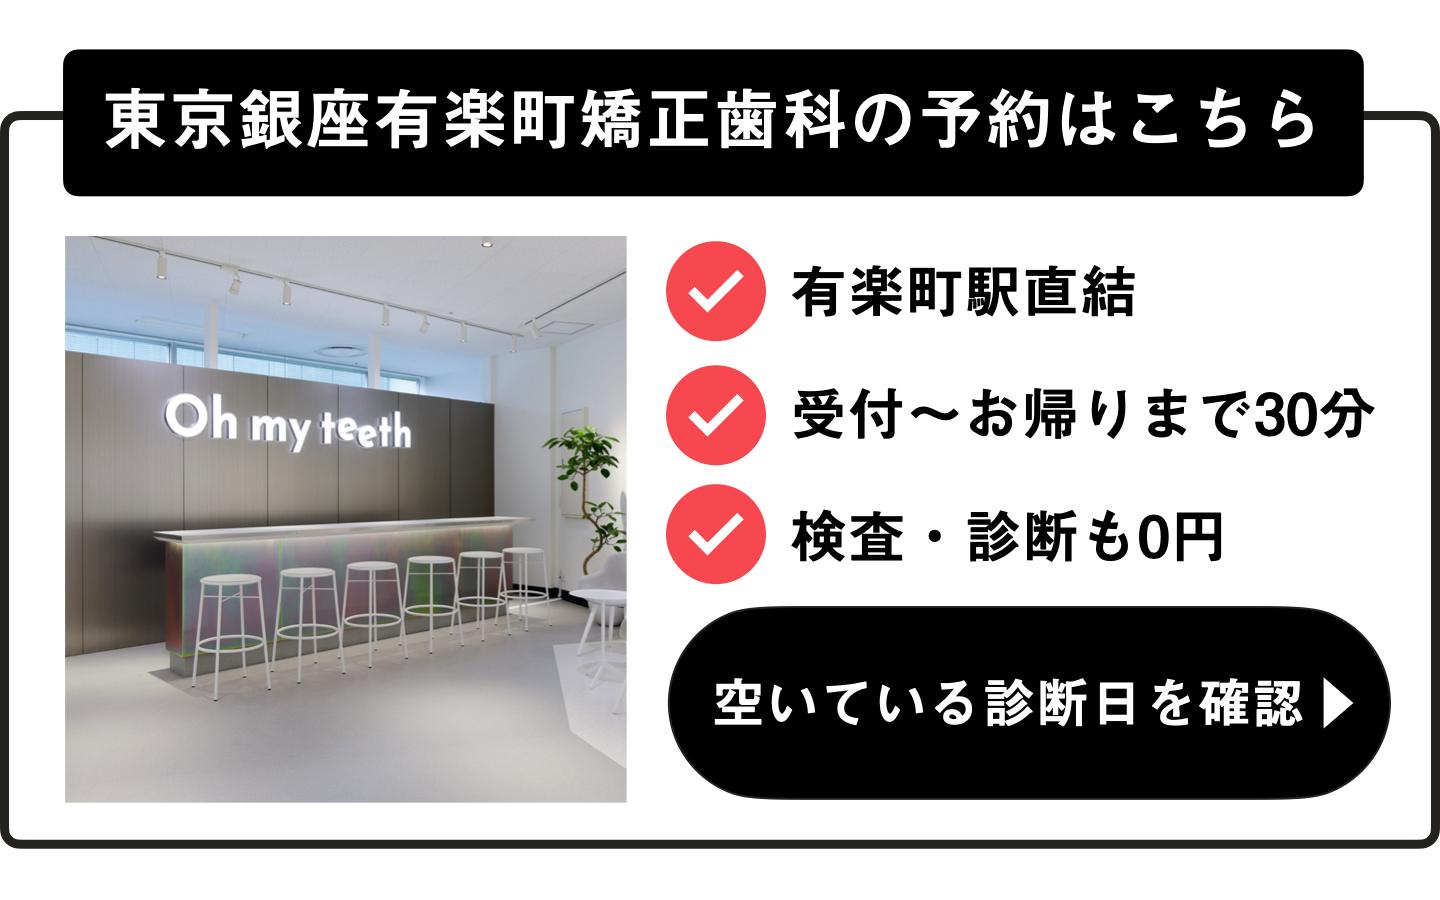 東京銀座有楽町矯正歯科の診断日を確認する